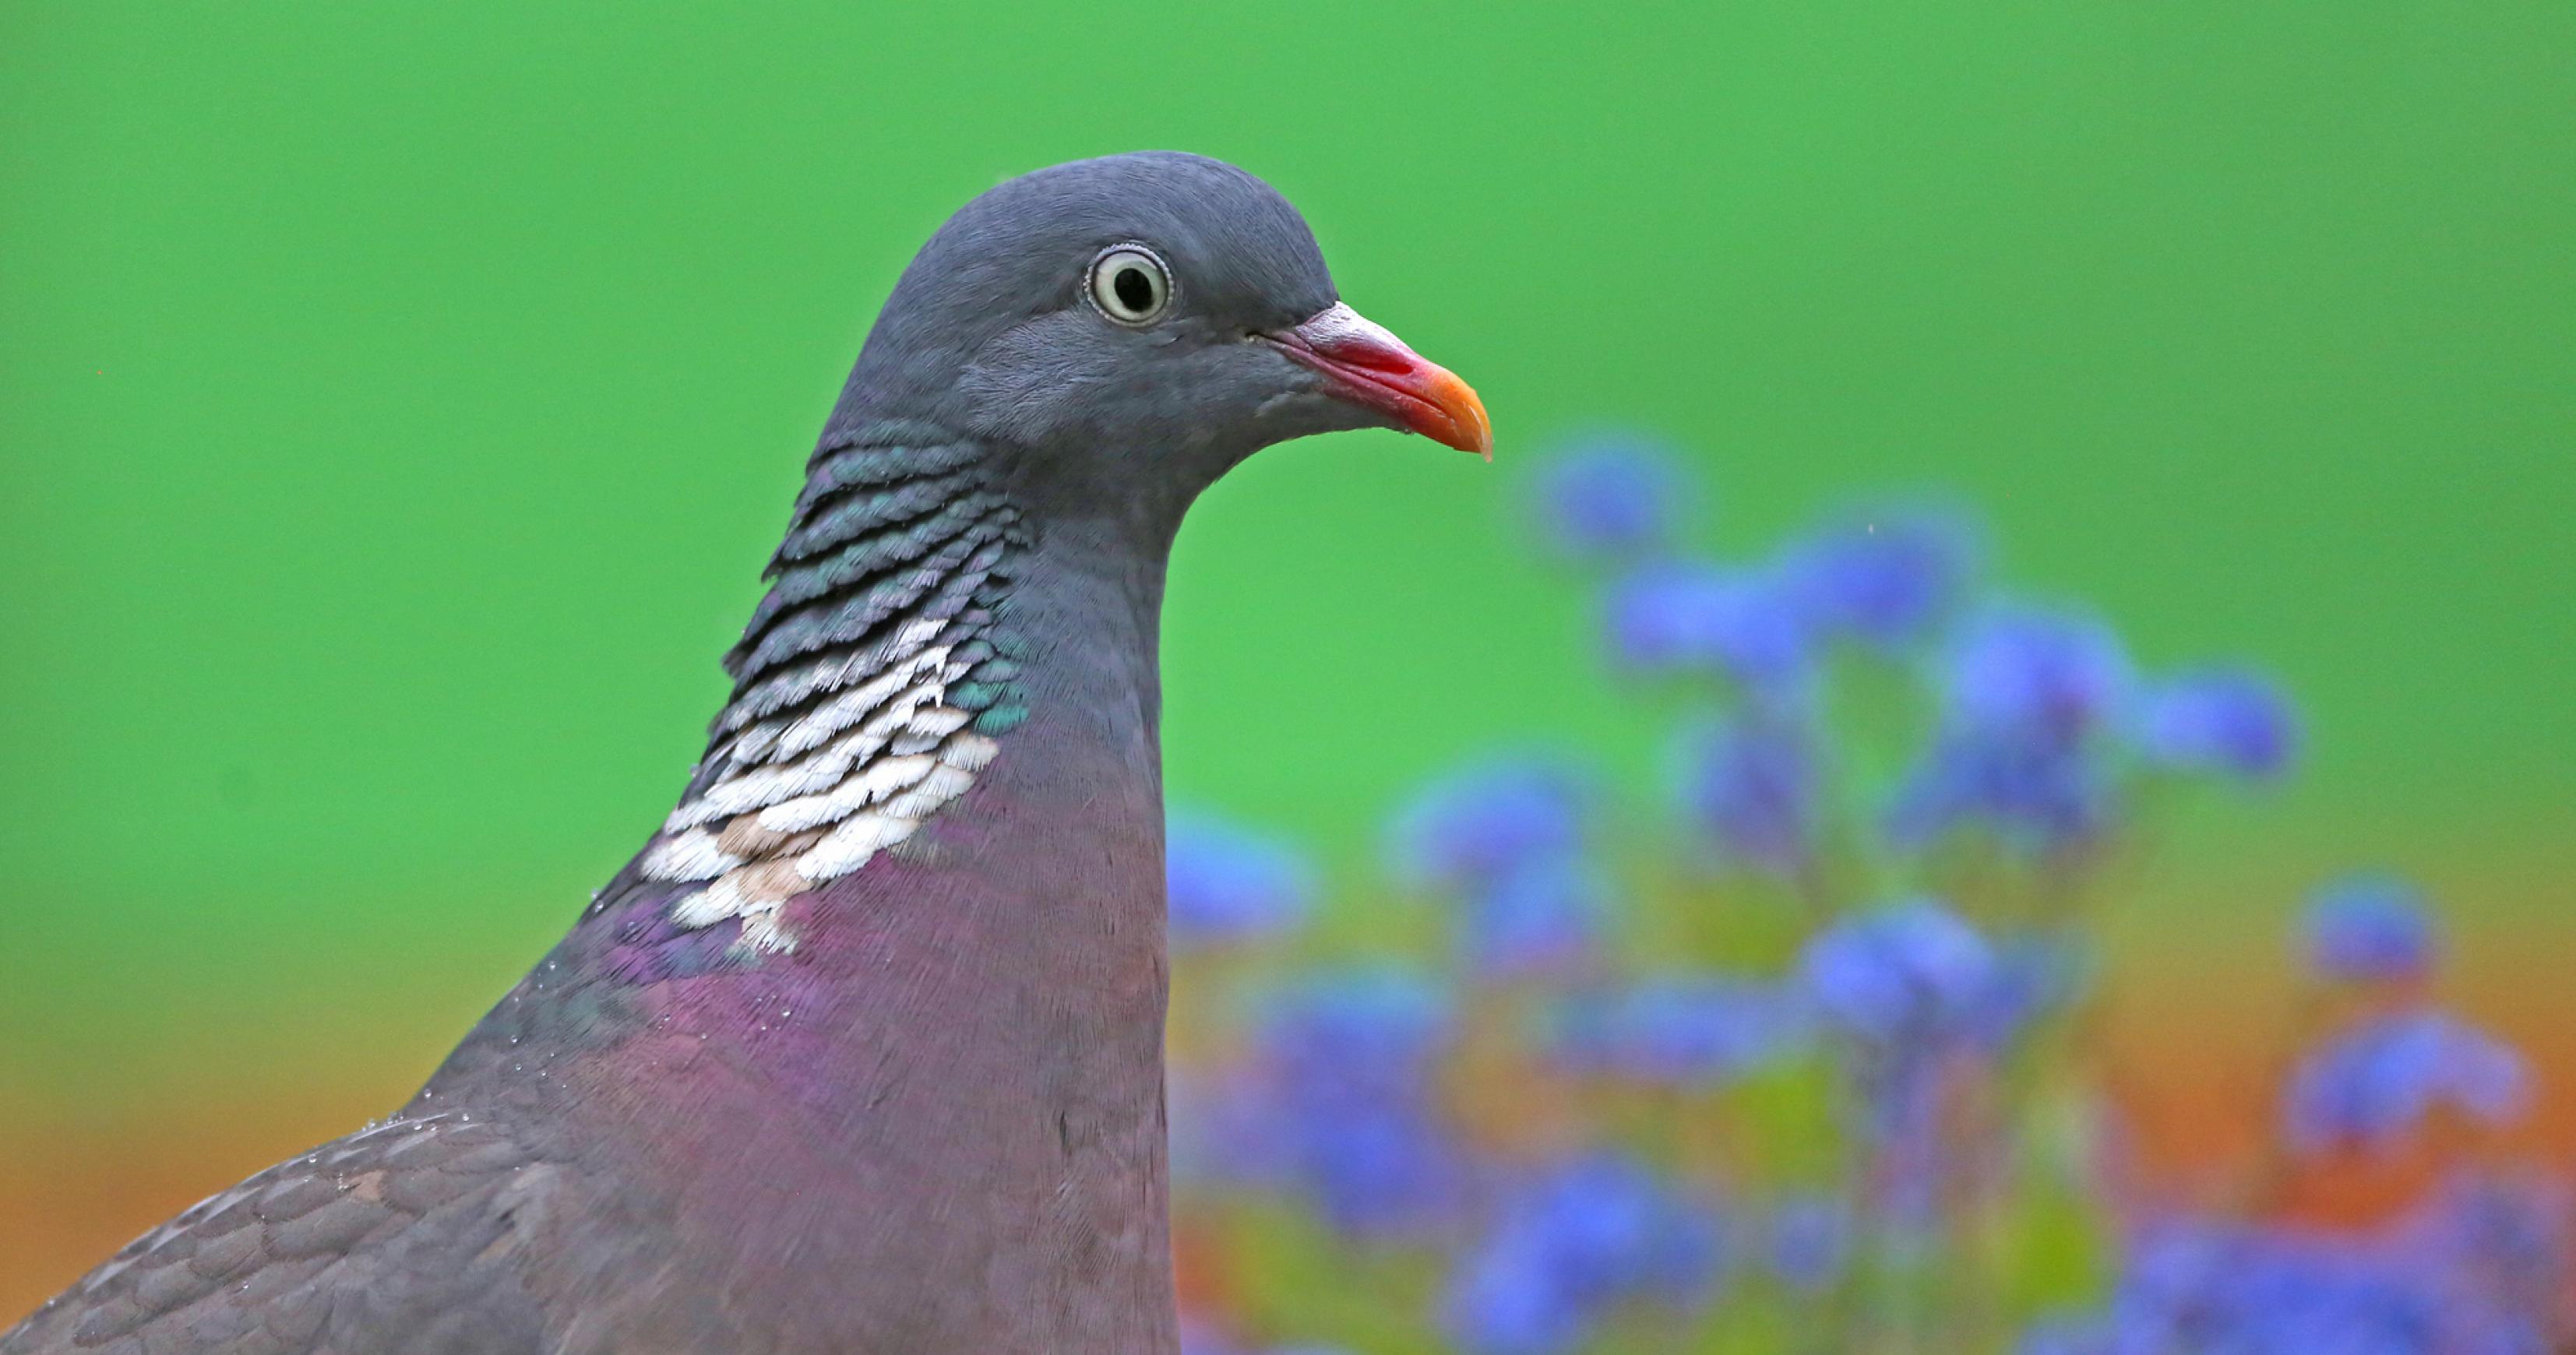 Ringeltauben aus dem südlichen Mitteleuropa und aus Nordeuropa sind Zugvögel. Jetzt im Spätsommer lassen sich oft große Trupps auf der Feldflur beobachten.